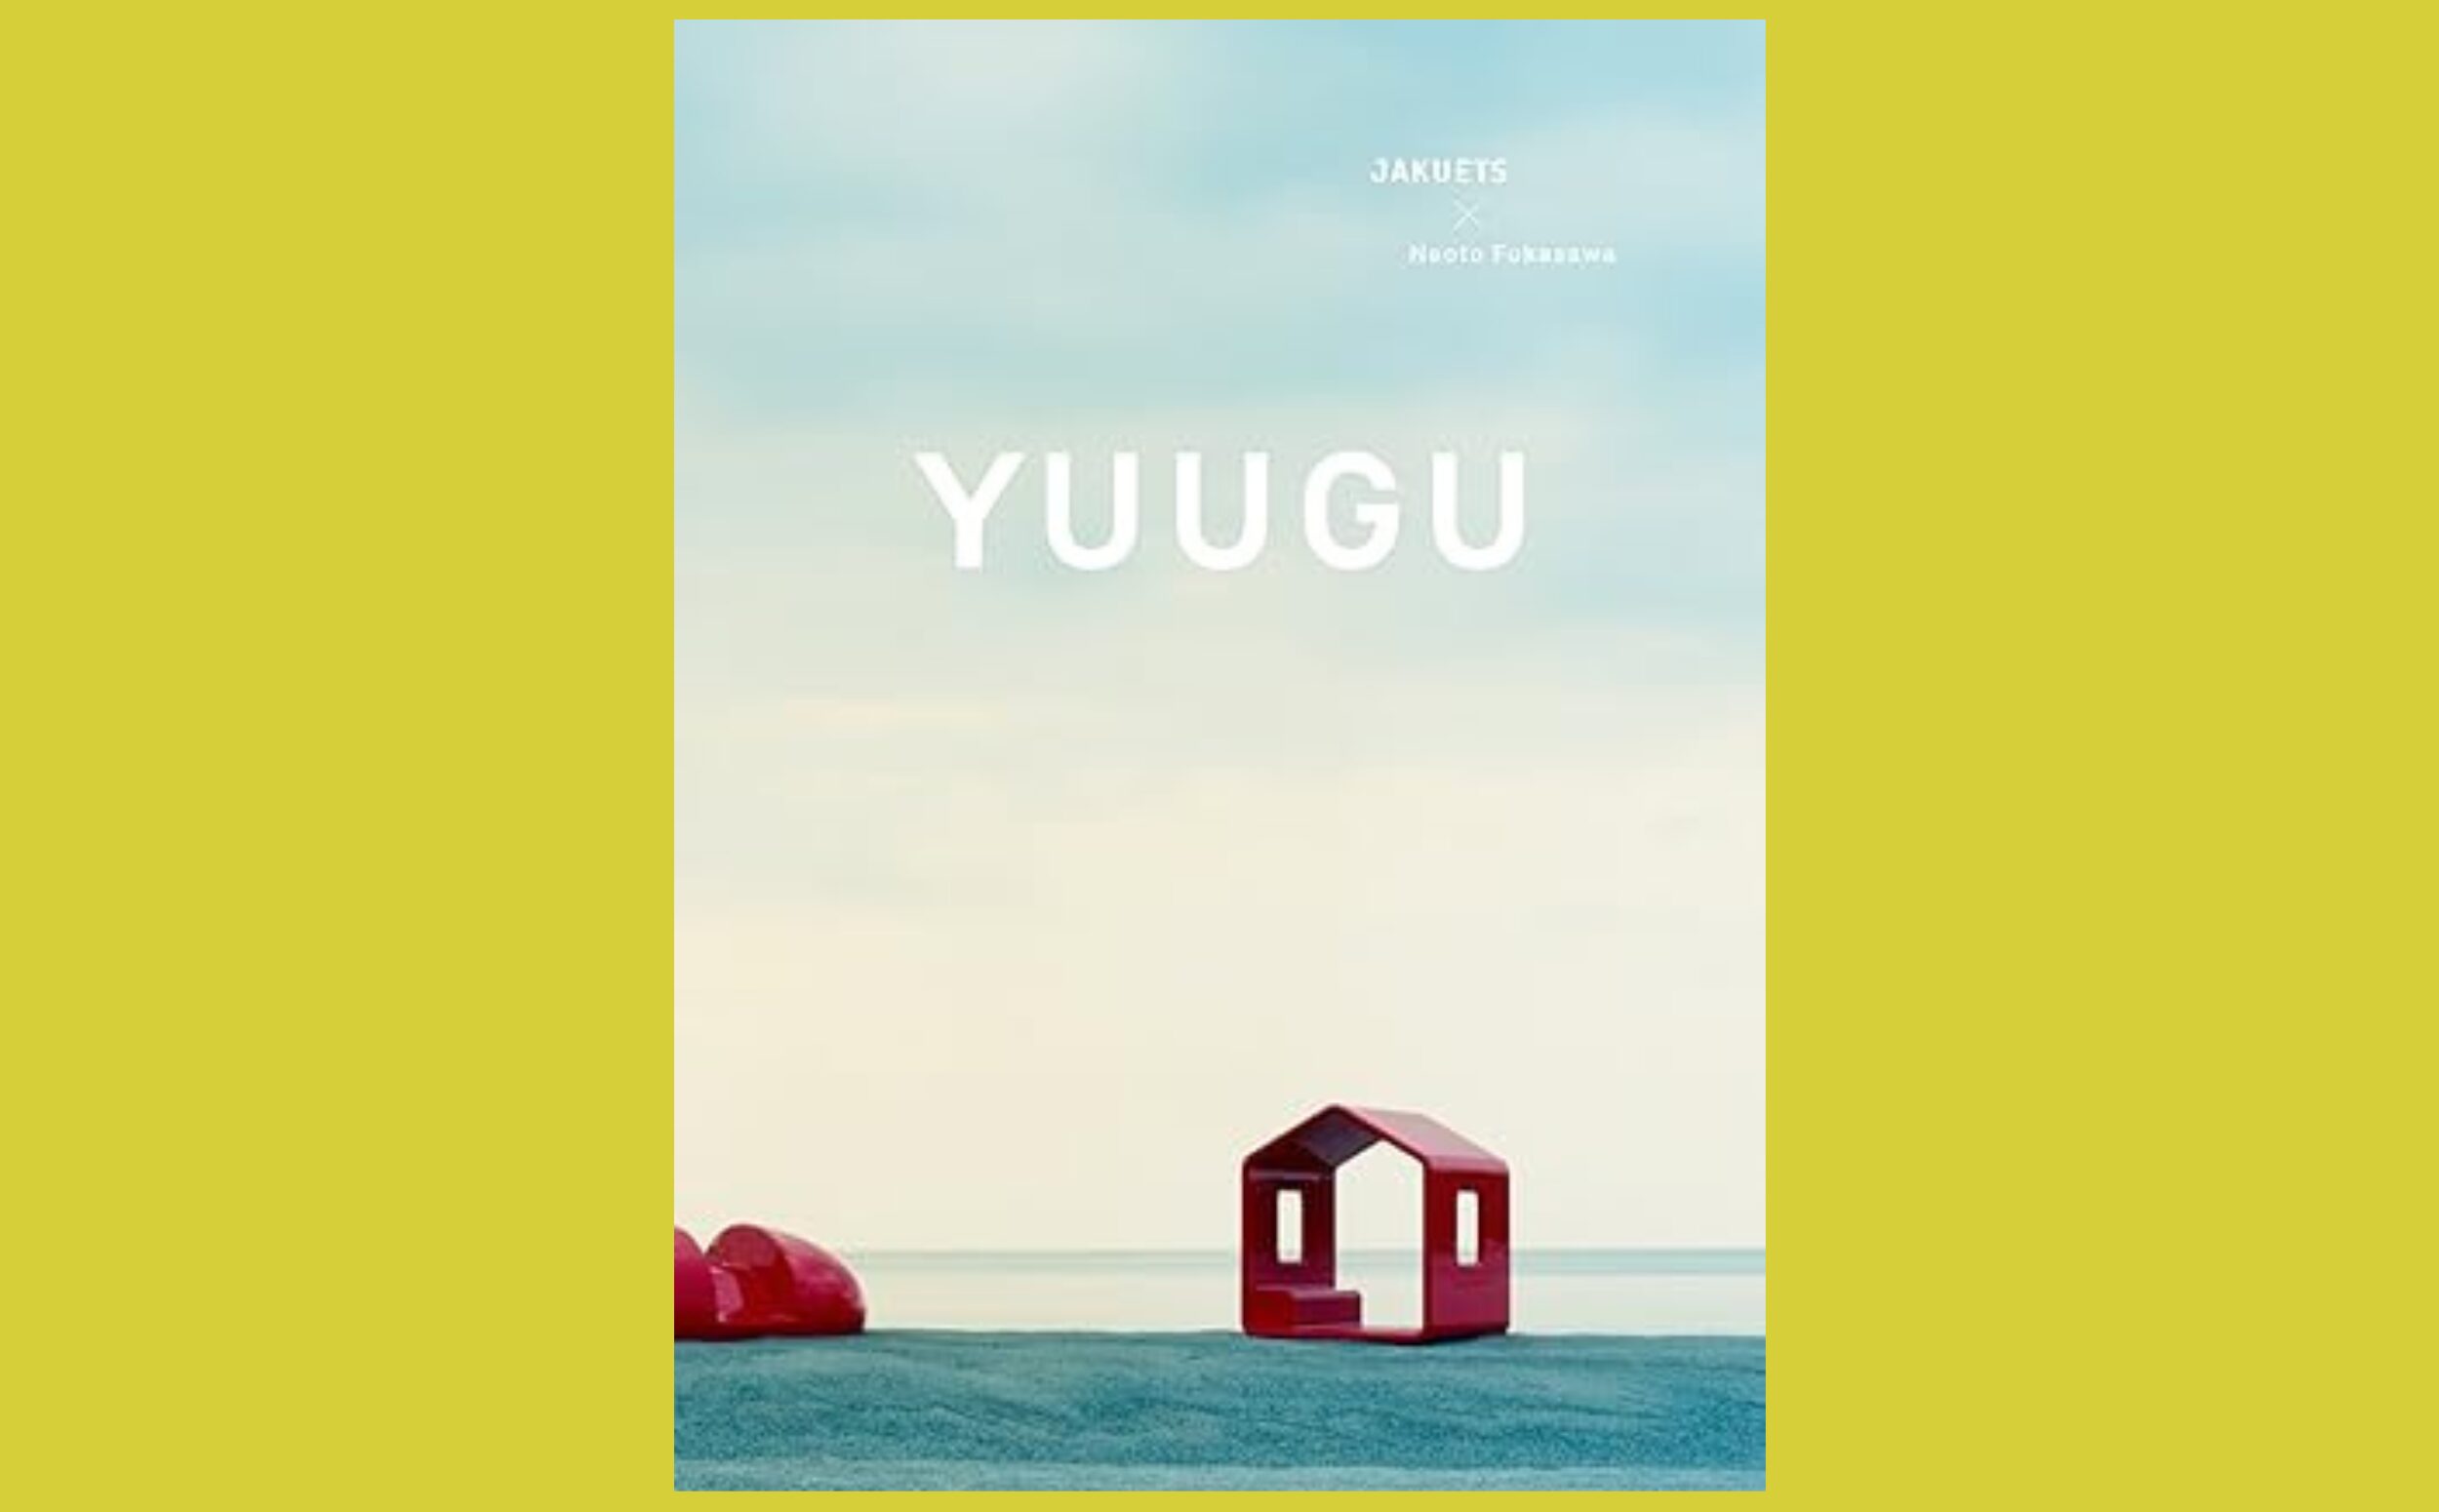 深澤直人の提案する新しい「遊び」の風景『YUUGU』